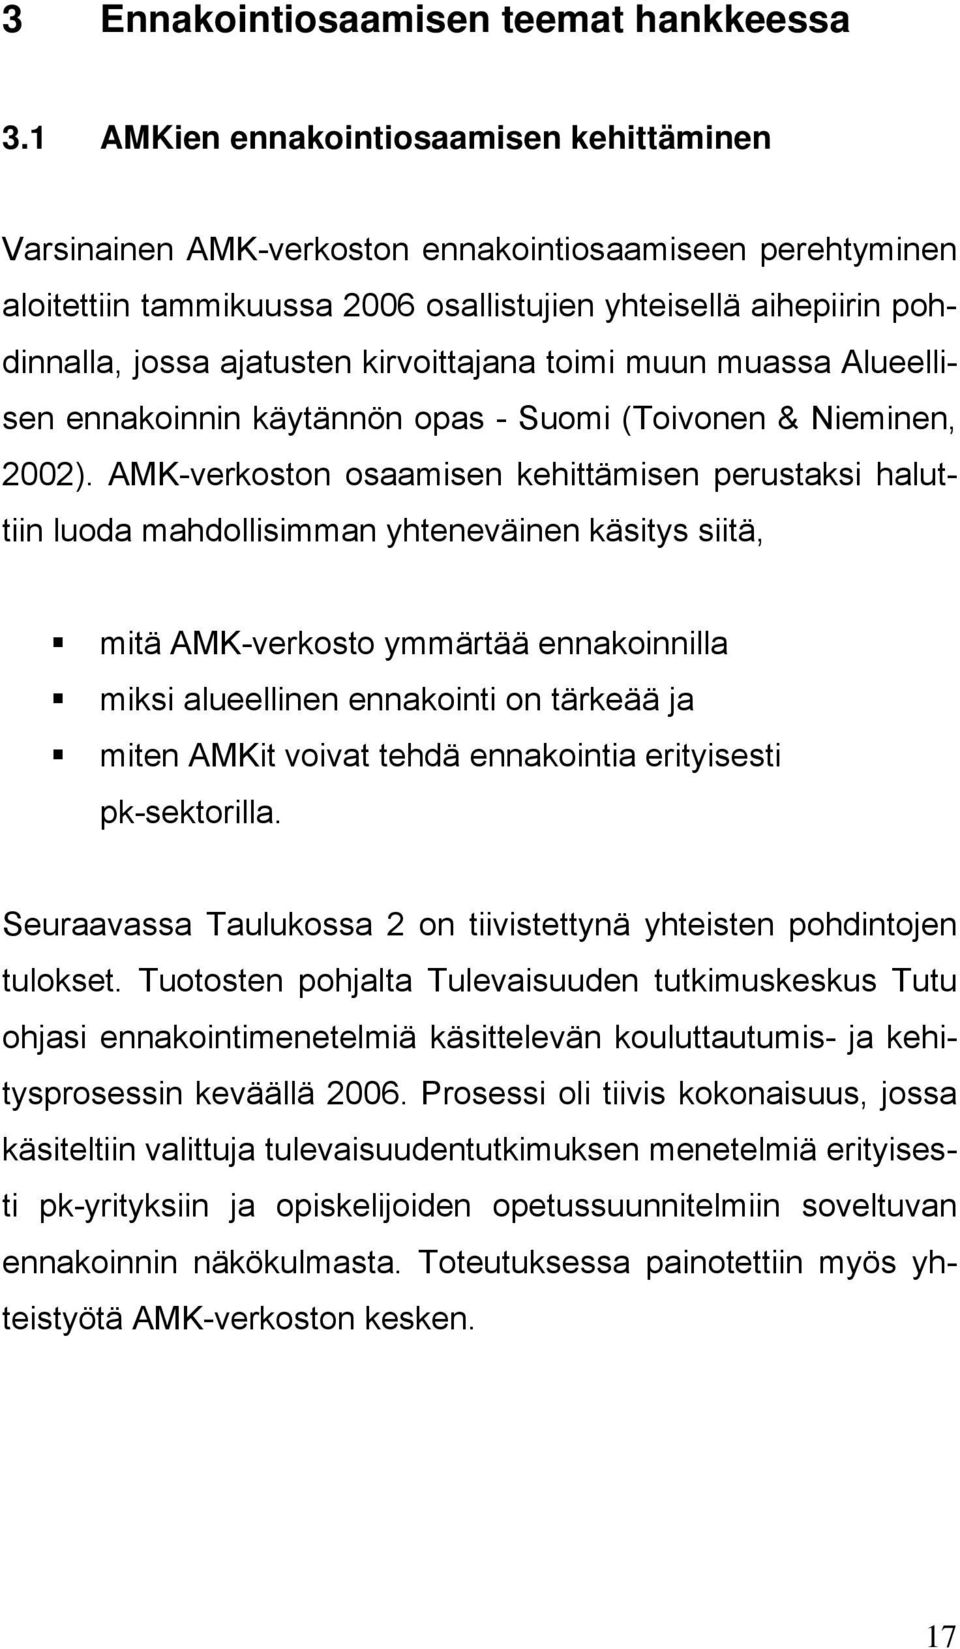 kirvoittajana toimi muun muassa Alueellisen ennakoinnin käytännön opas - Suomi (Toivonen & Nieminen, 2002).